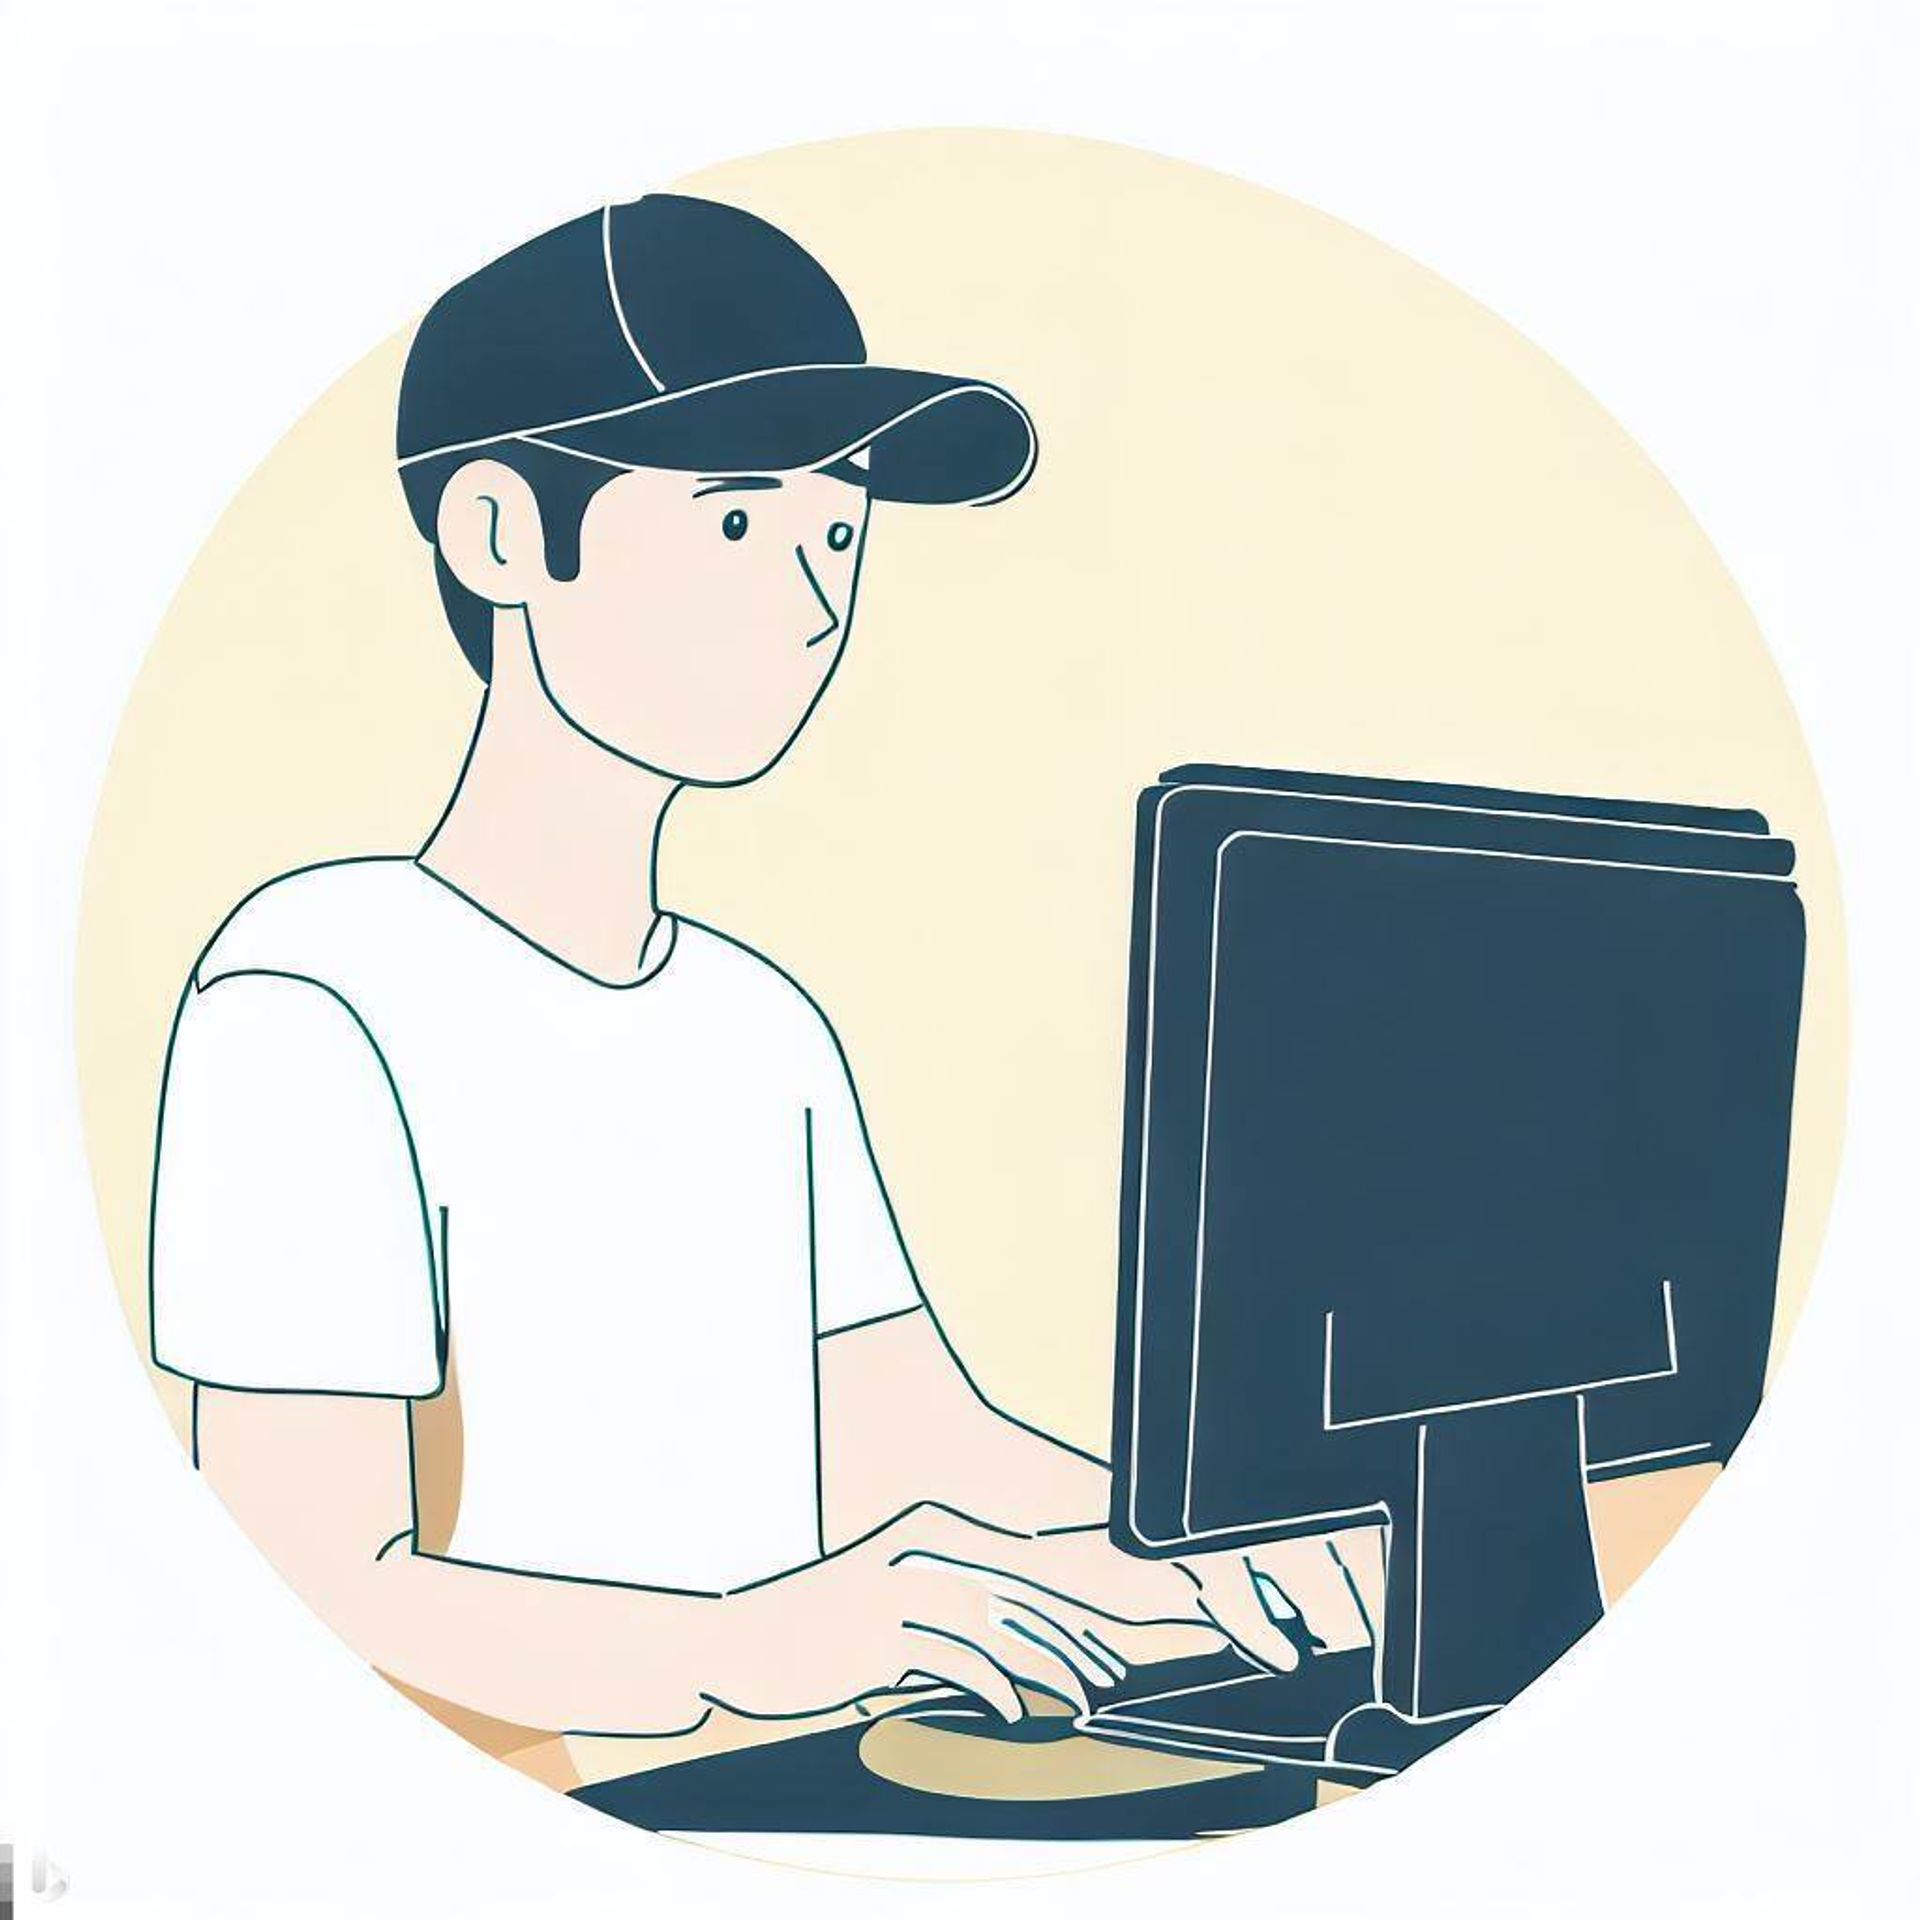 Ung mann med caps foran en dataskjerm. 